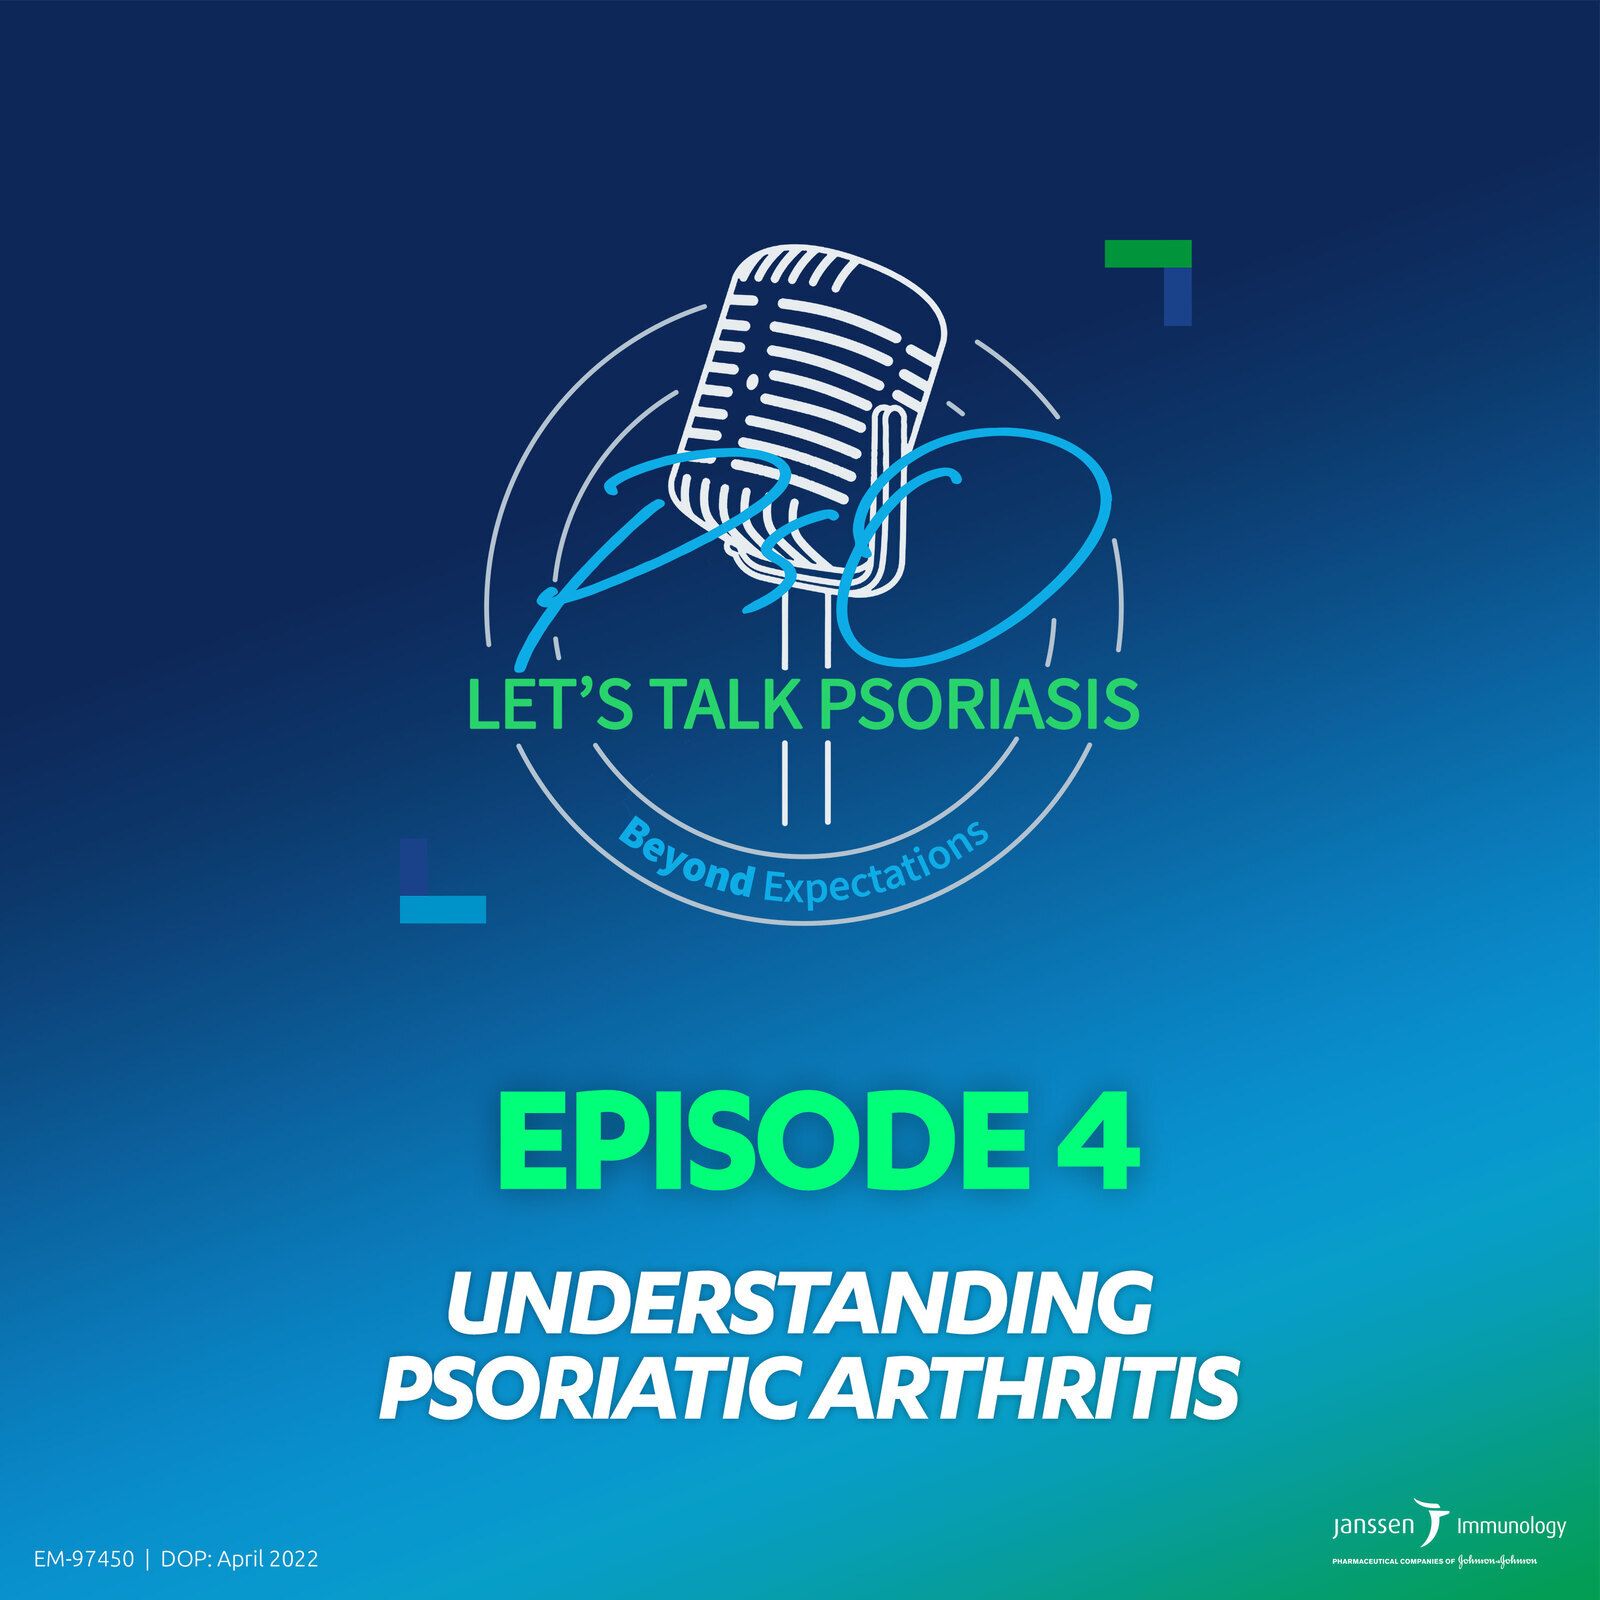 4: Episode 4 - Understanding psoriatic arthritis